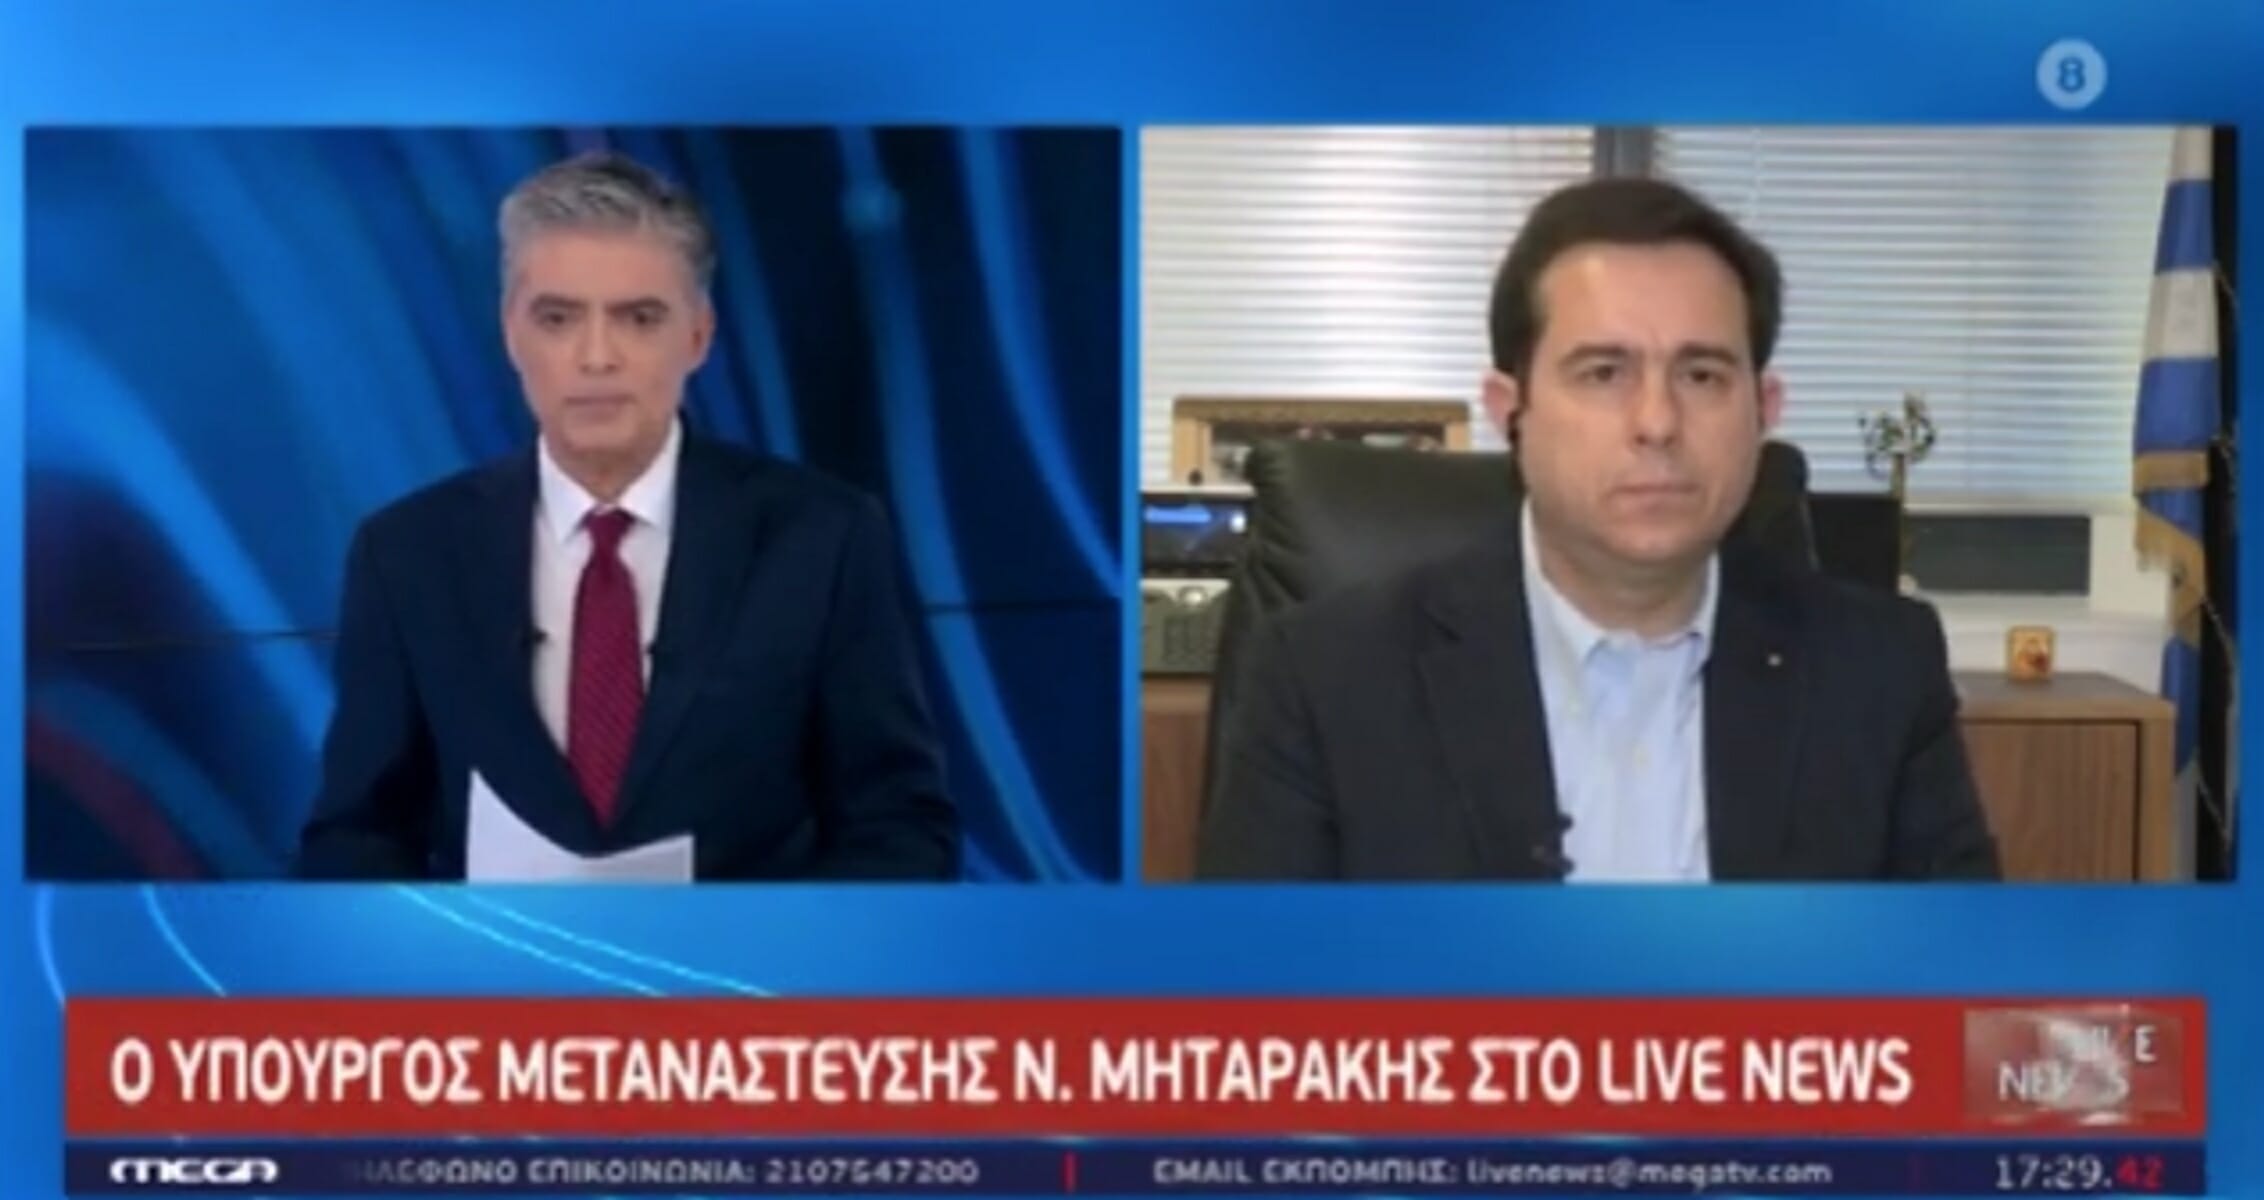 Μηταράκης στο Live News: Δεν μίλησα για πάγωμα αλλά για μια εβδομάδα προθεσμία